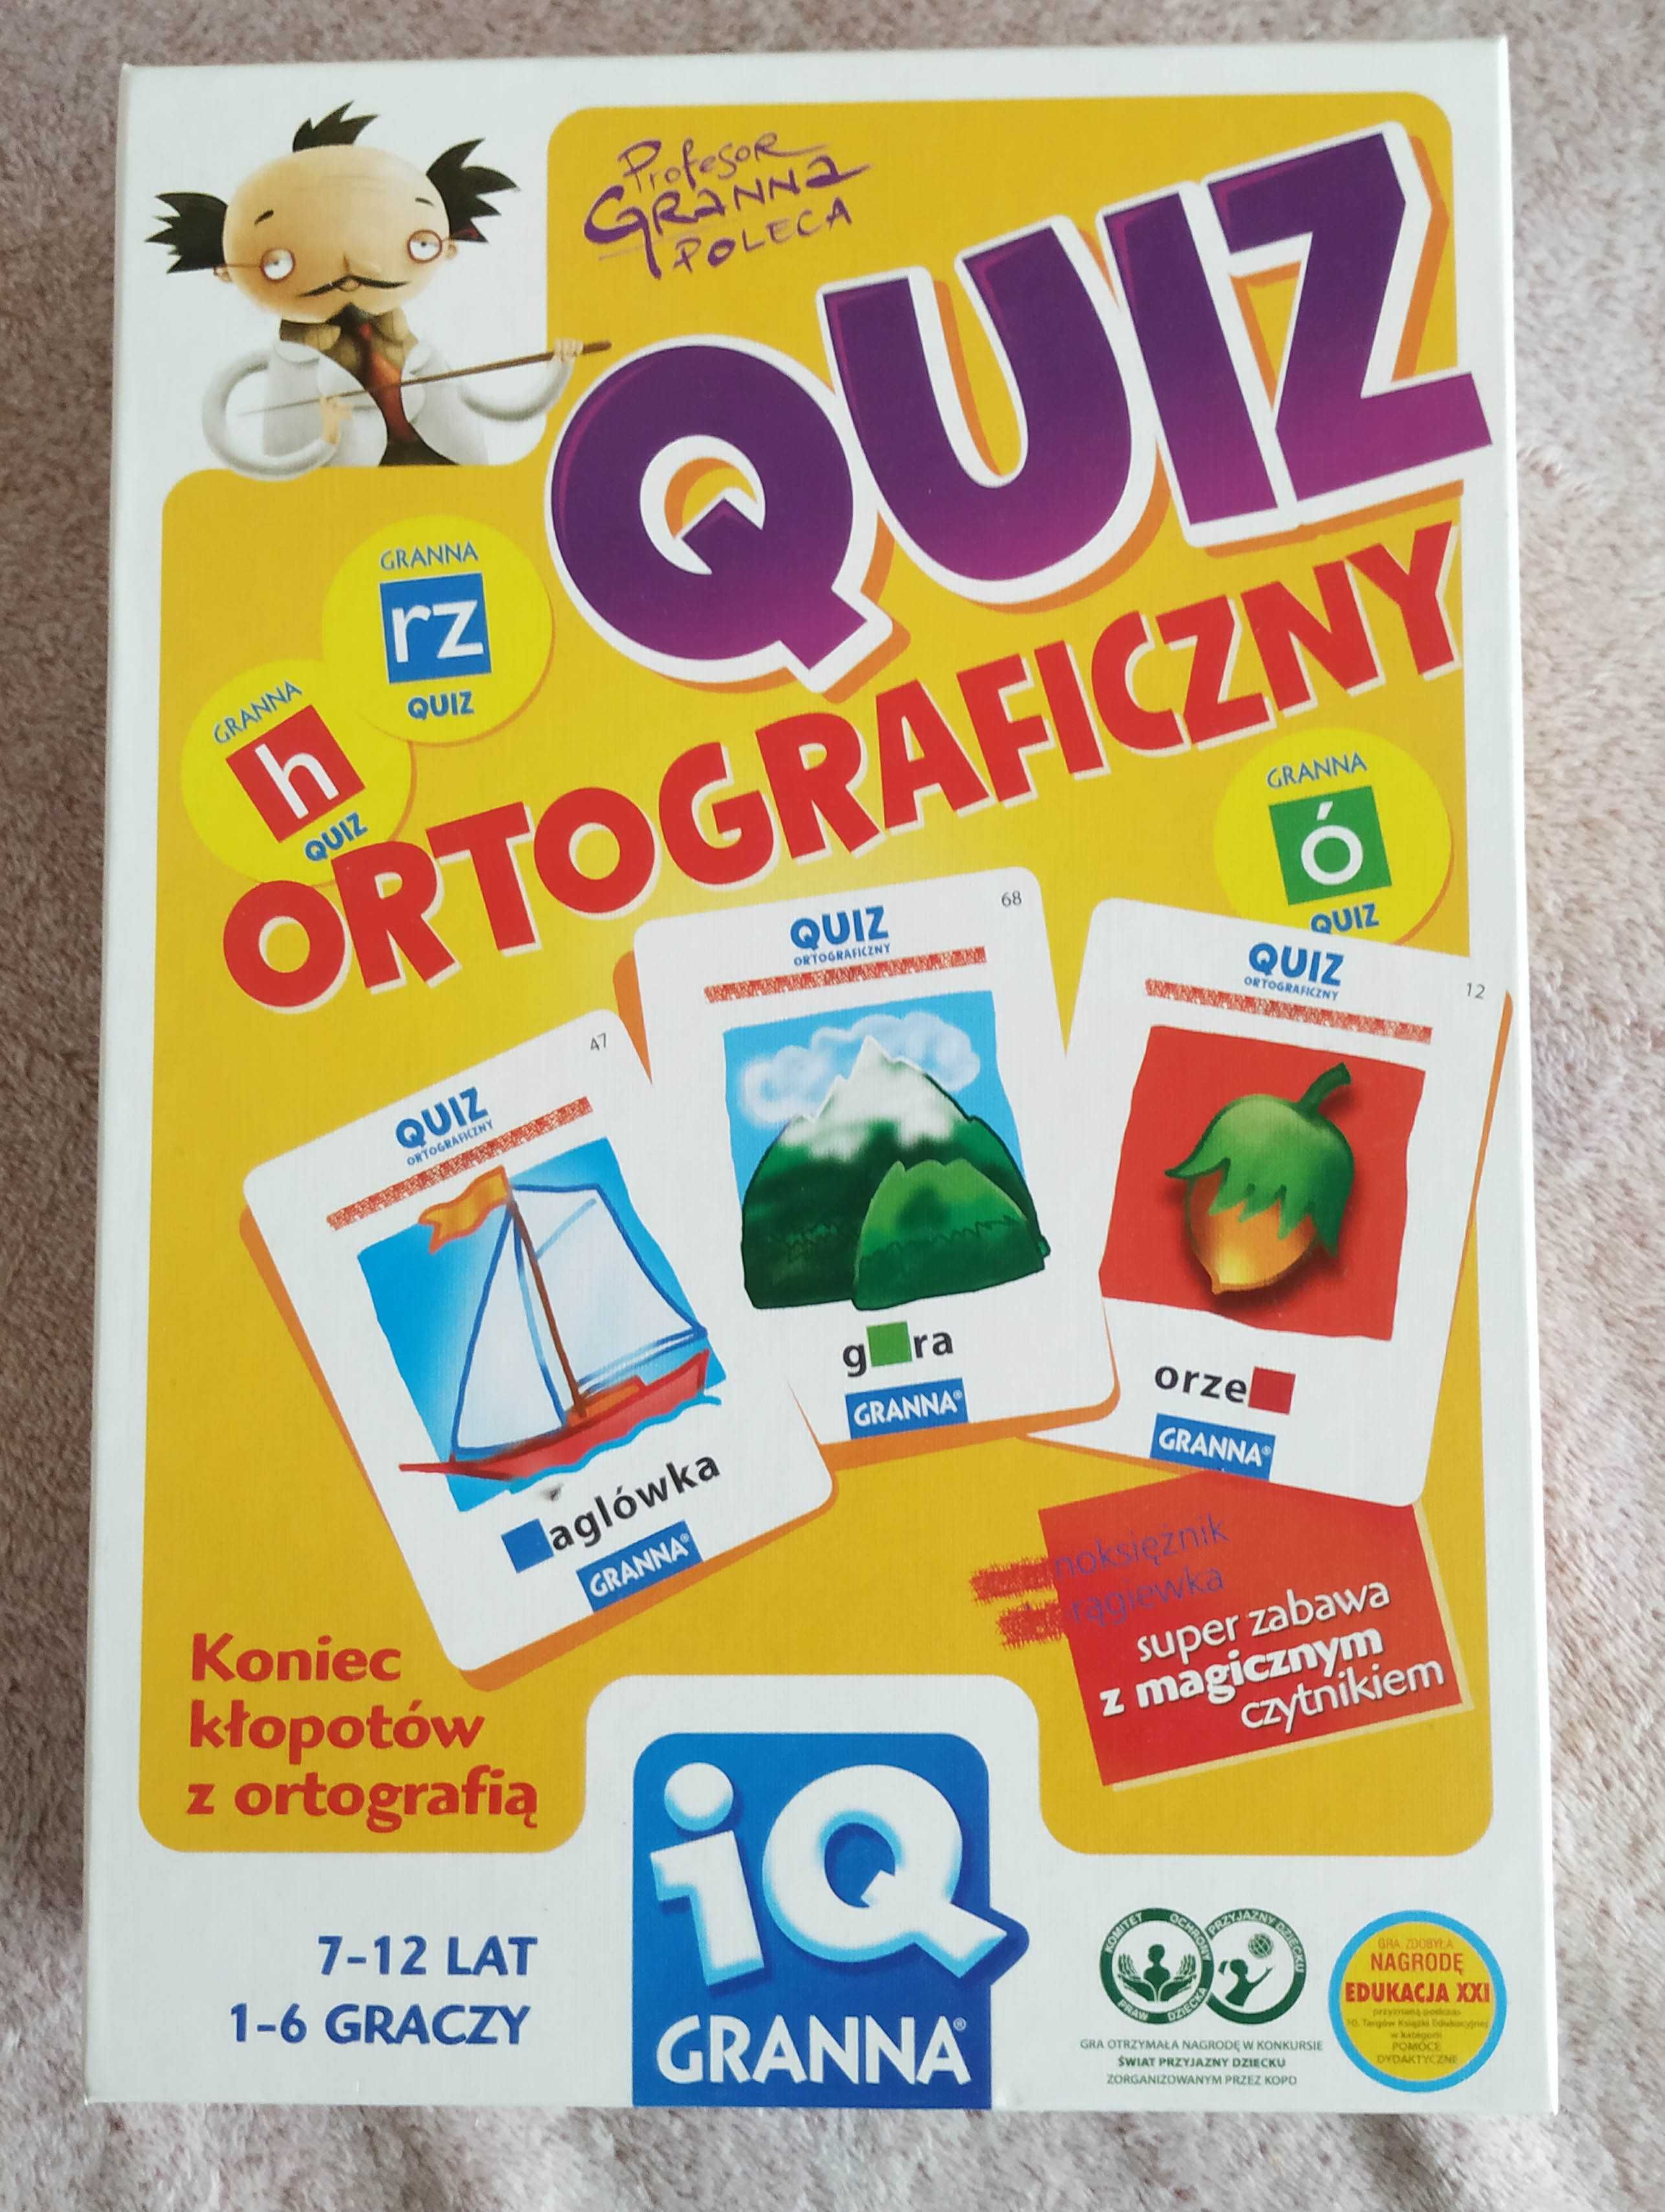 Granna IQ Quiz Ortograficzny, gra planszowa